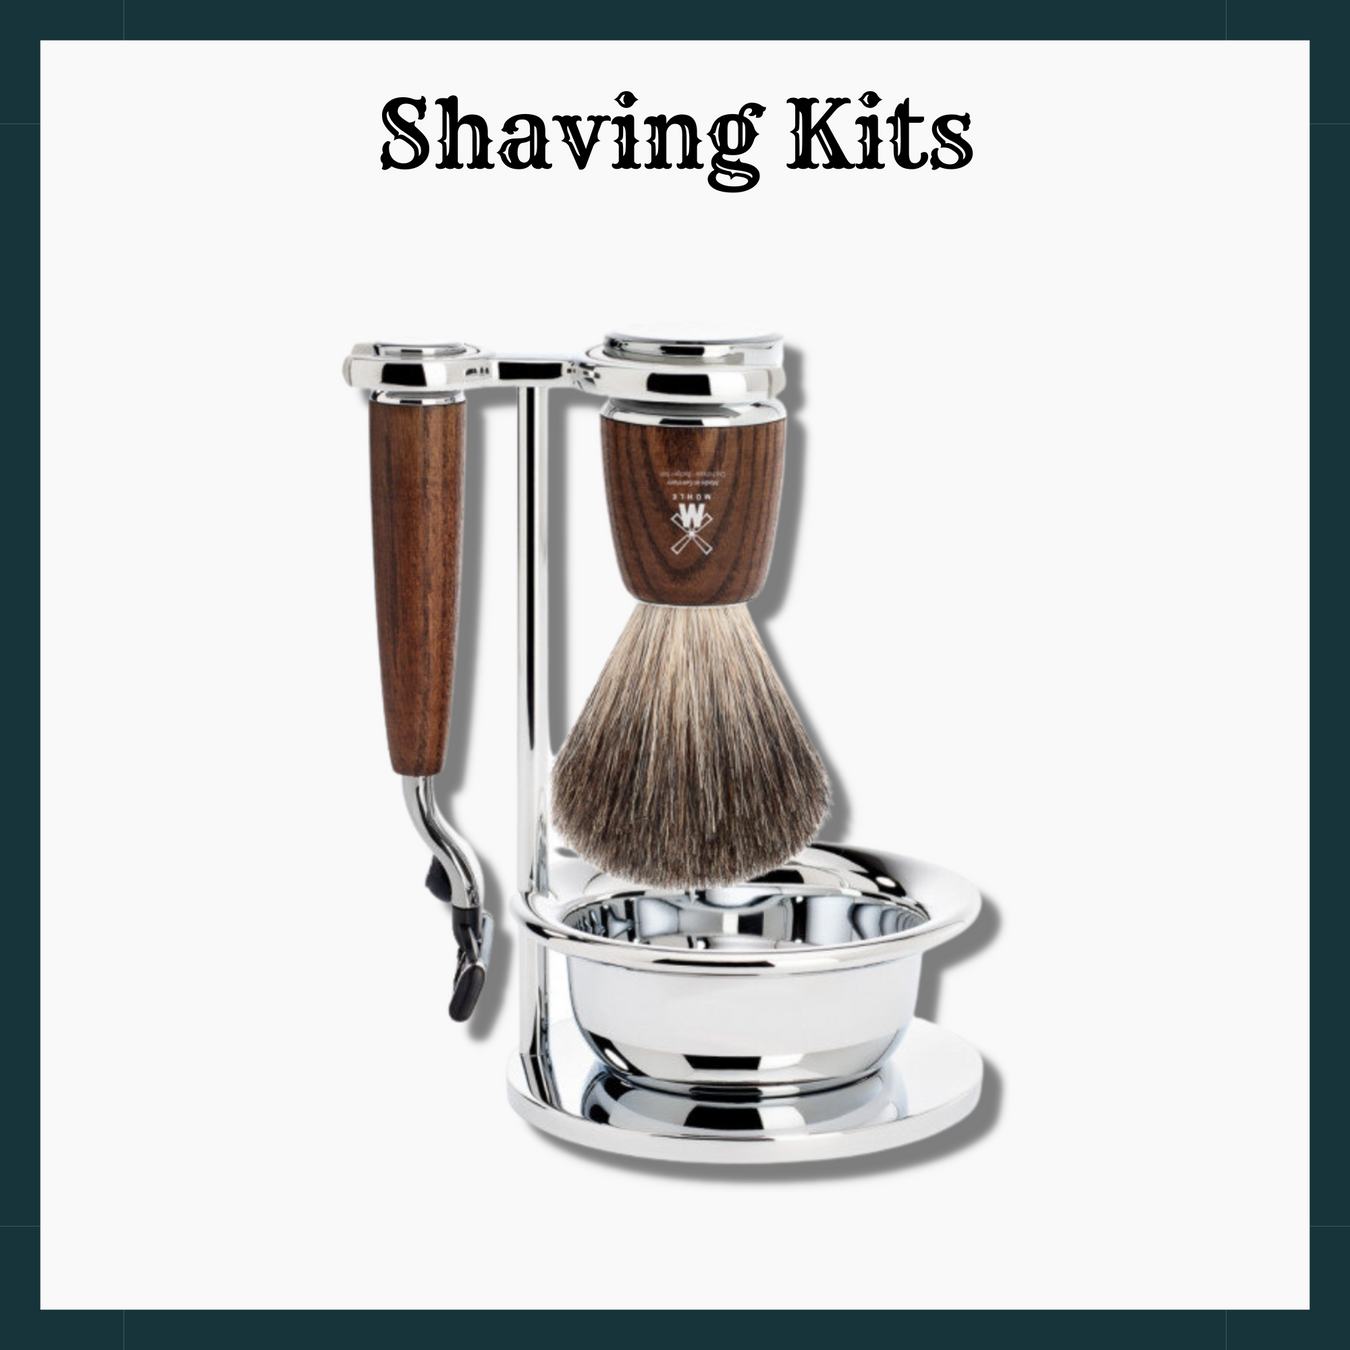 Shaving kits